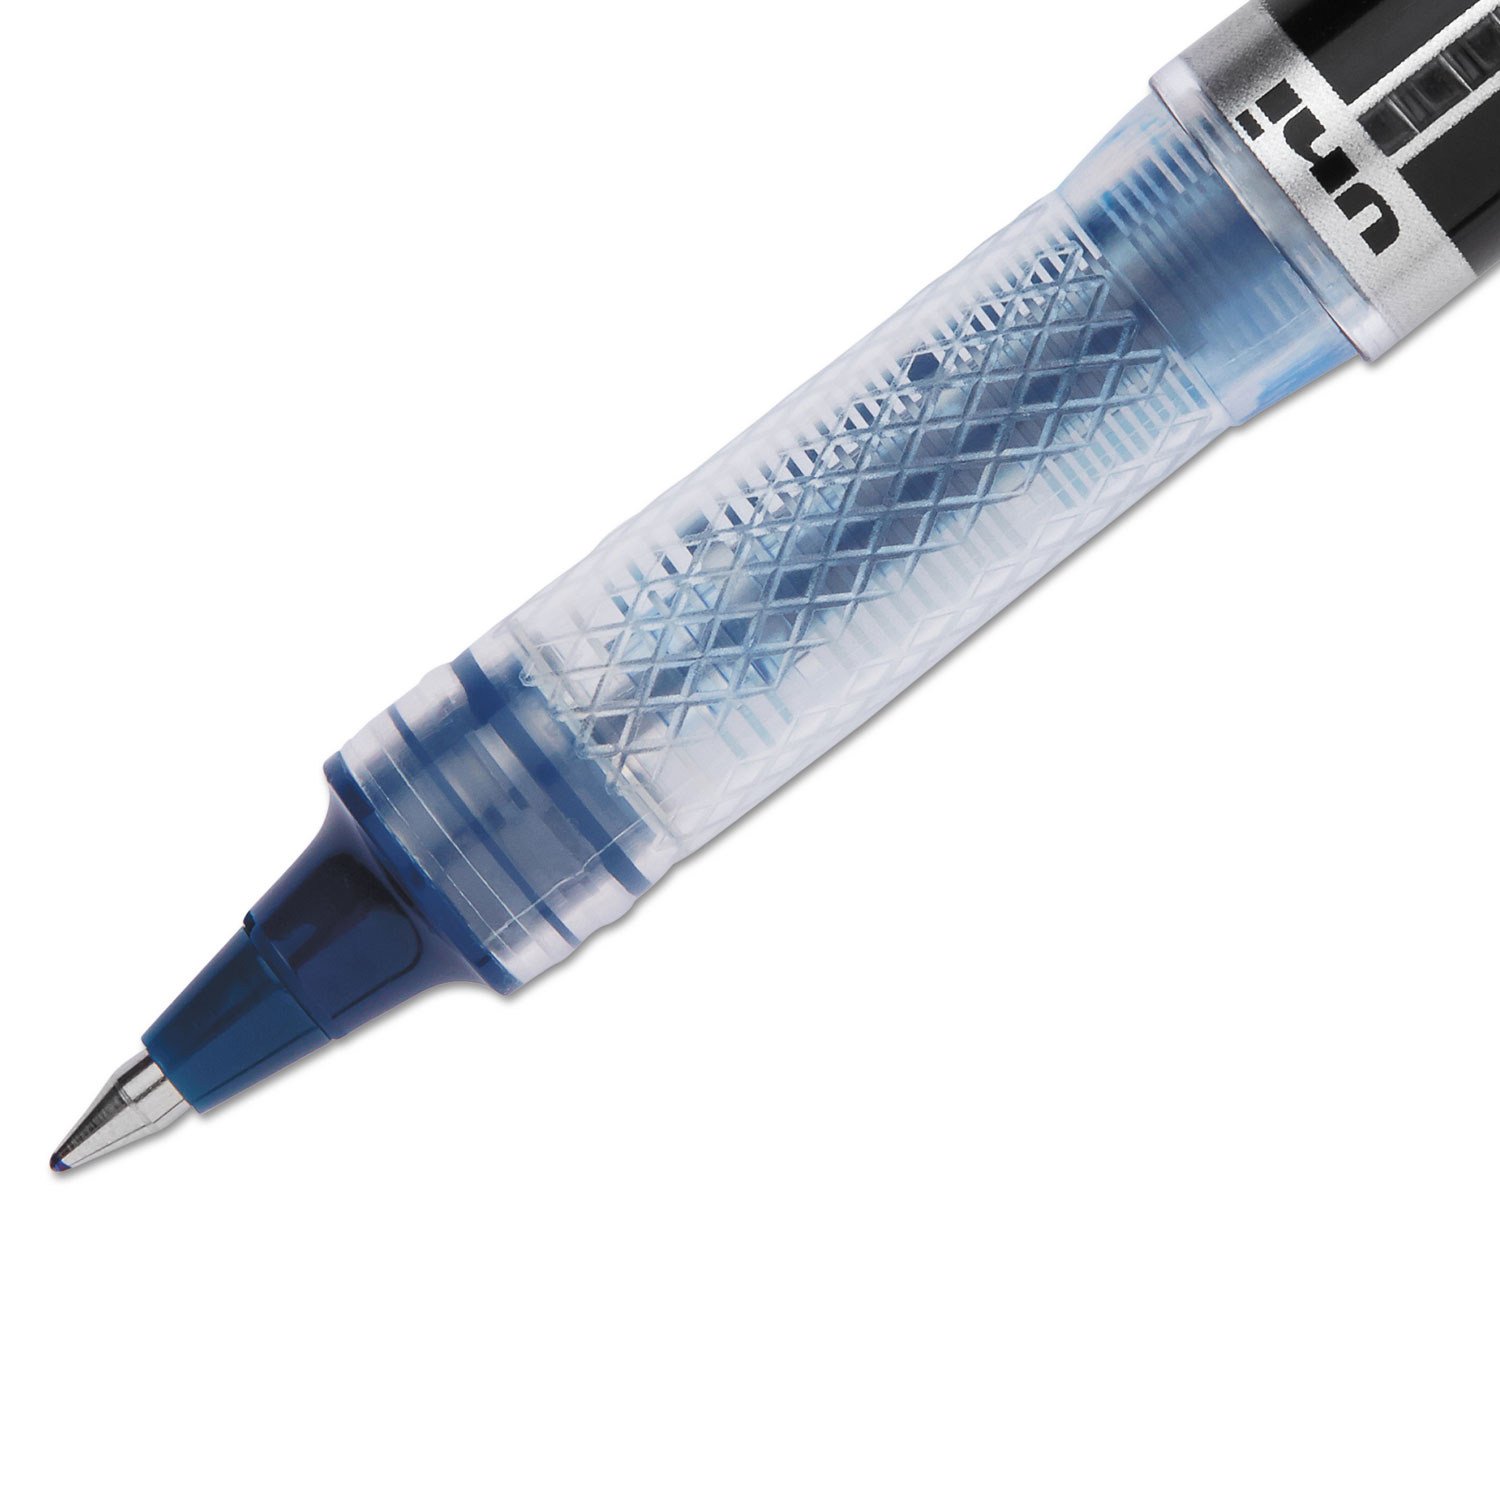 VISION ELITE Stick Roller Ball Pen, 0.5mm, Blue-Black Ink, Black/Blue Barrel